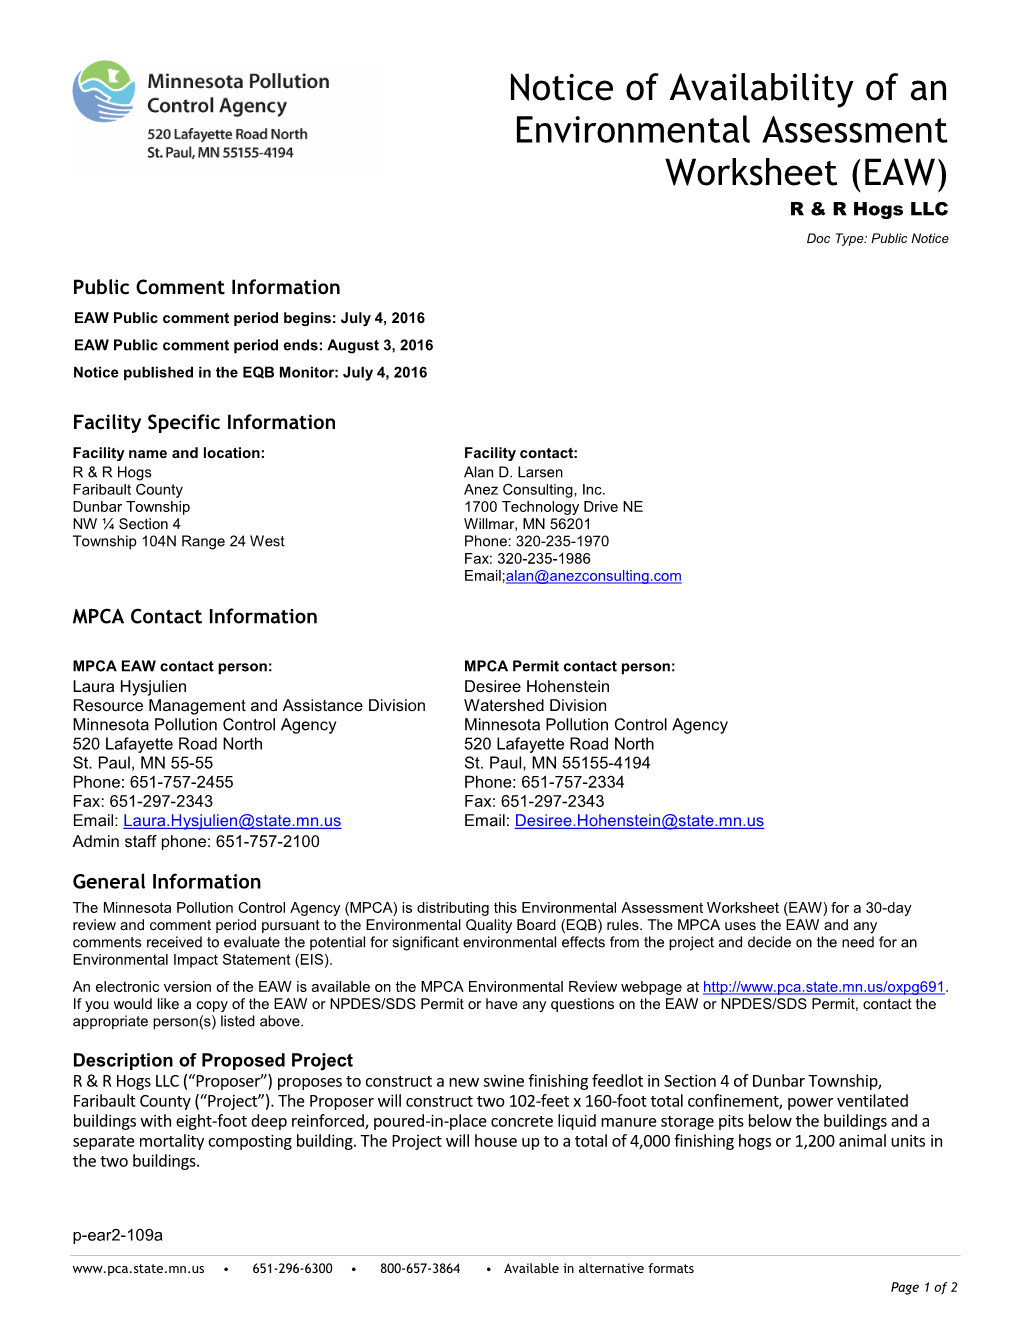 R & R Hogs LLC Environmental Assessment Worksheet